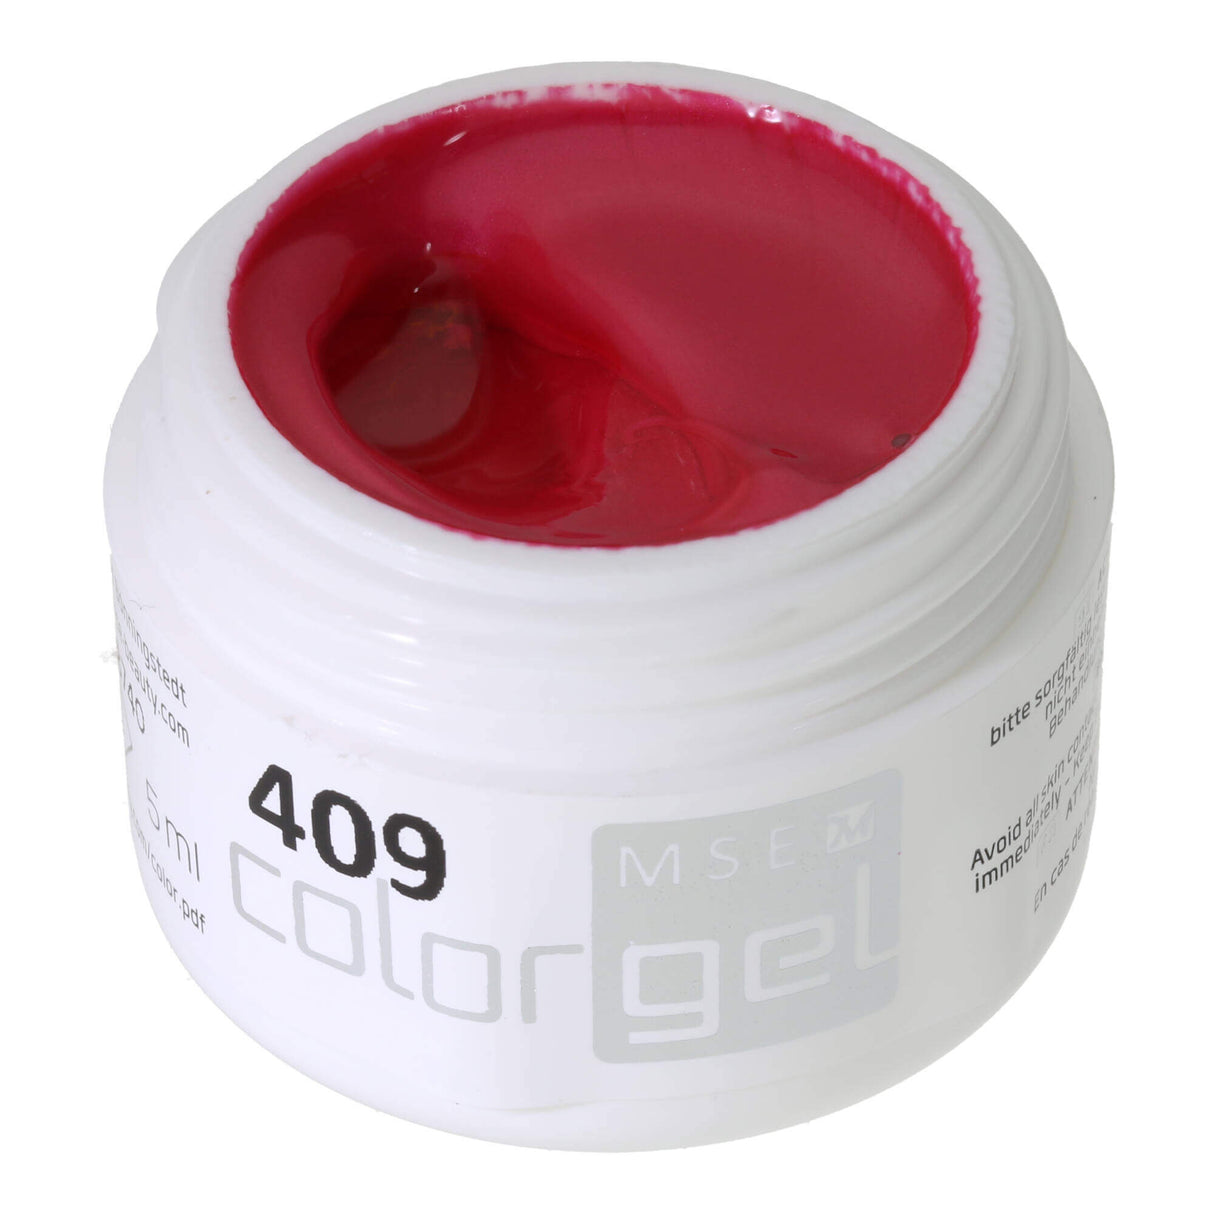 # 409 Premium EFFECT Color Gel 5ml Subtle shimmering strong pink